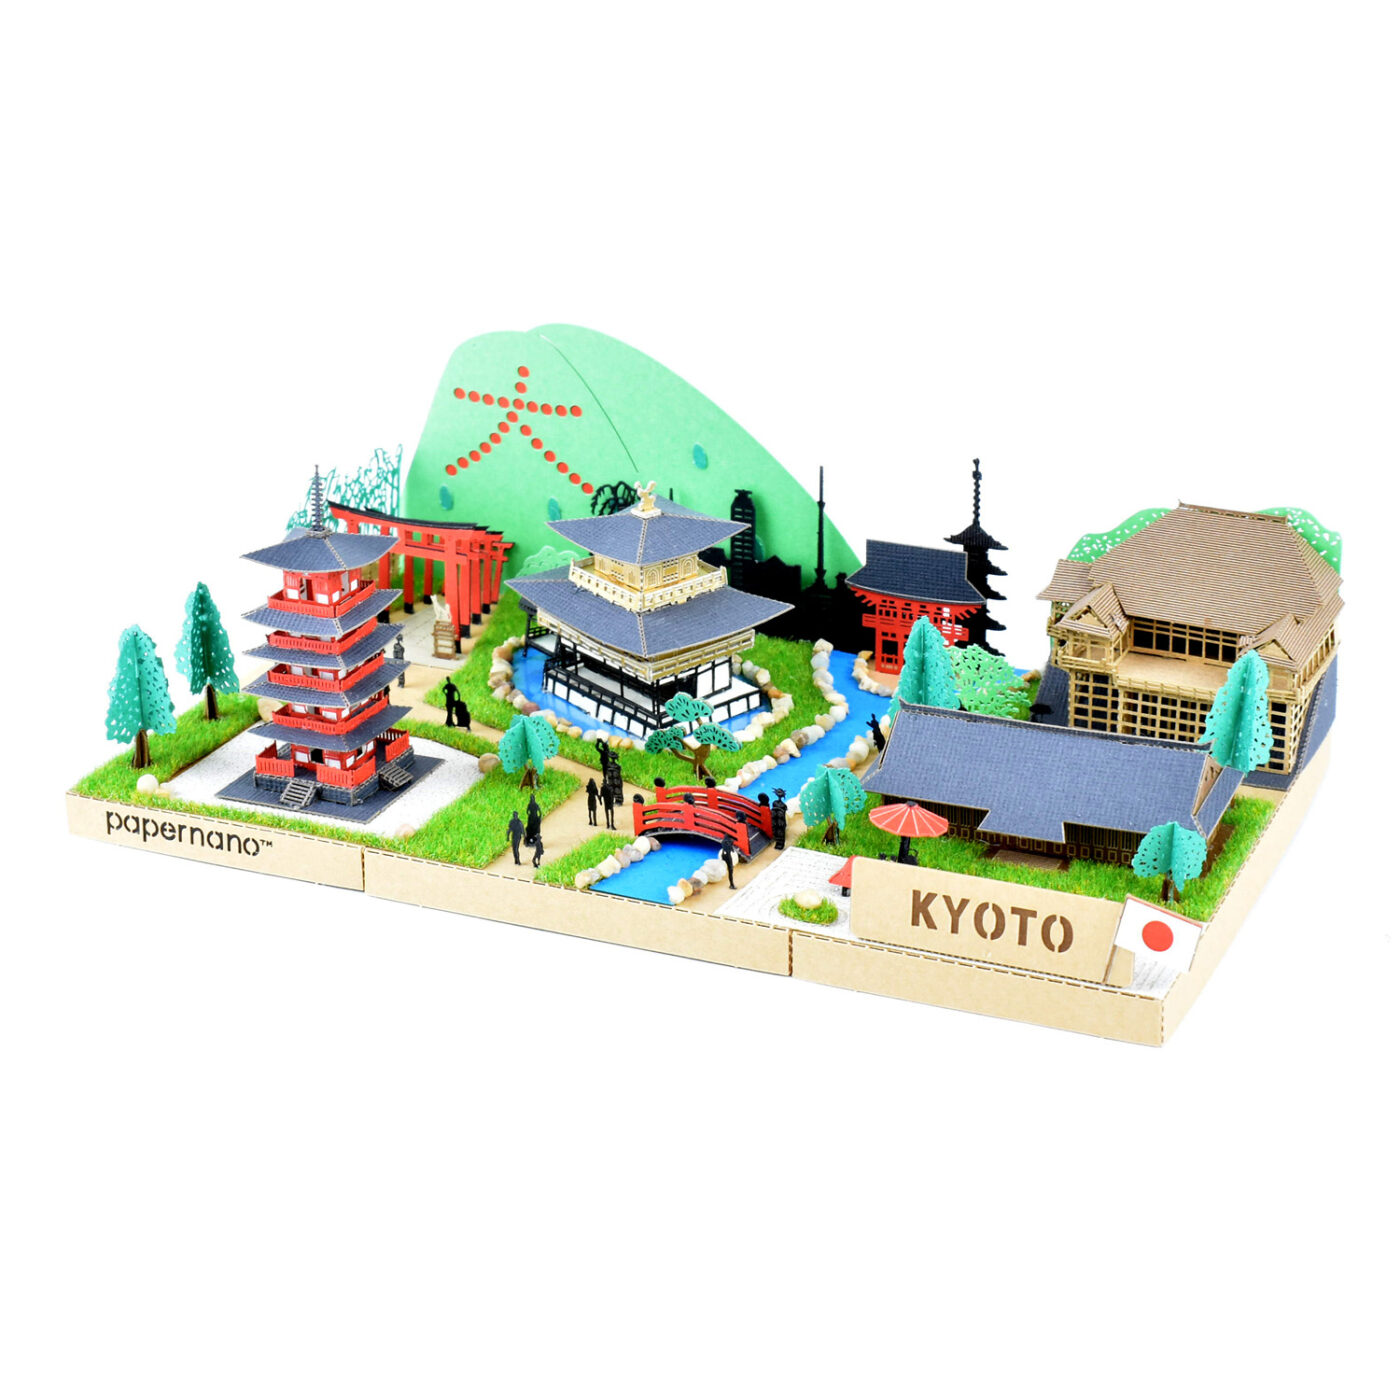 シティシリーズ 京都の商品画像1